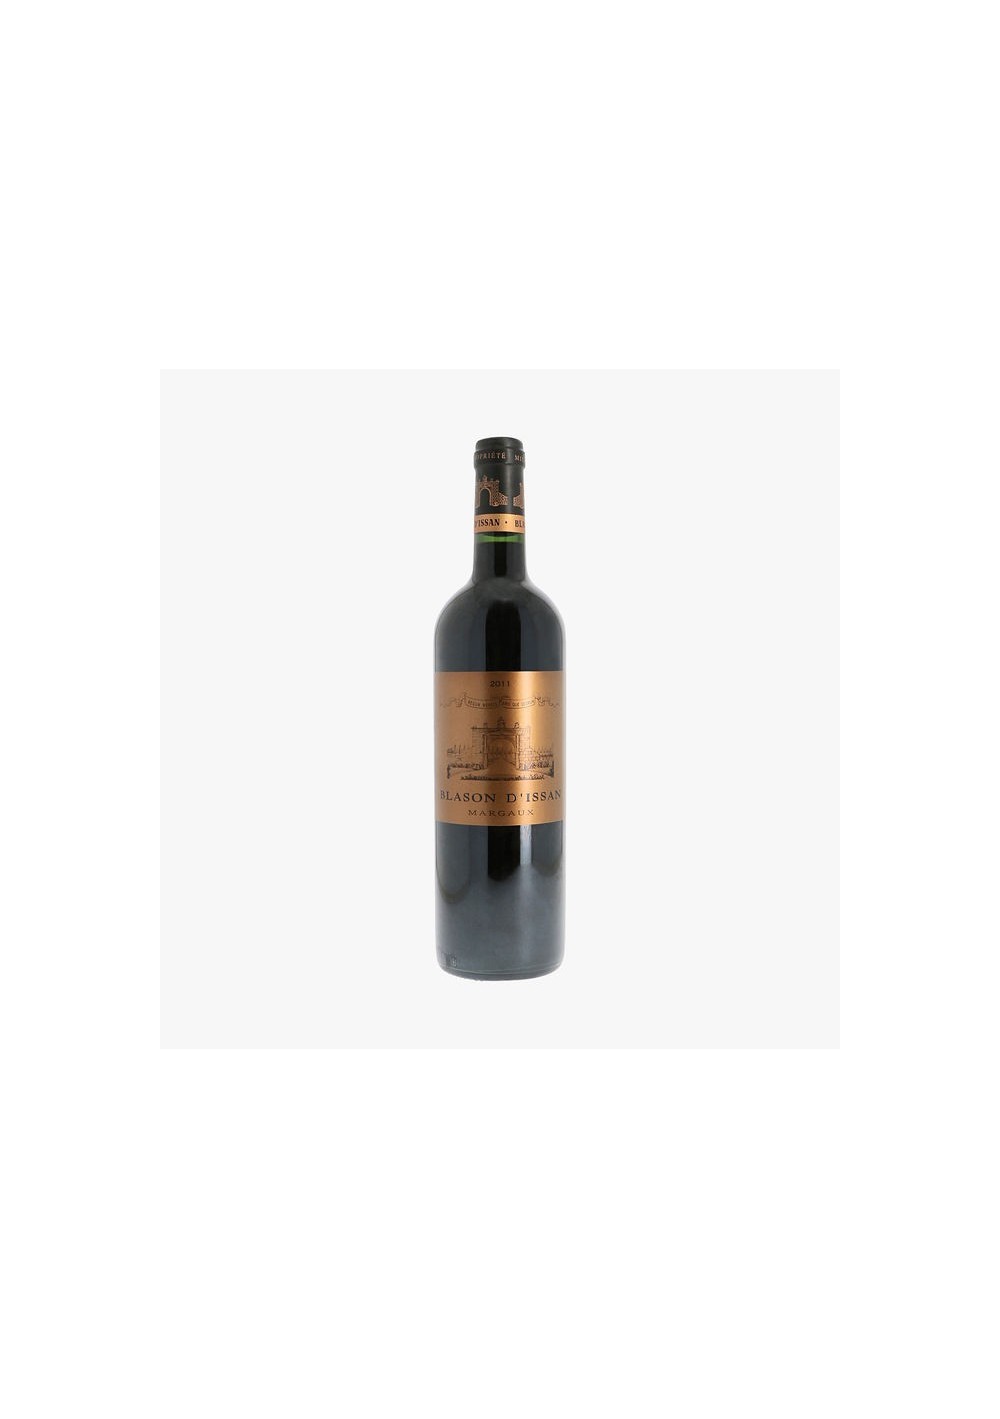 Blason d'Issan 2014 - 2ème vin du Château d'Issan - Margaux